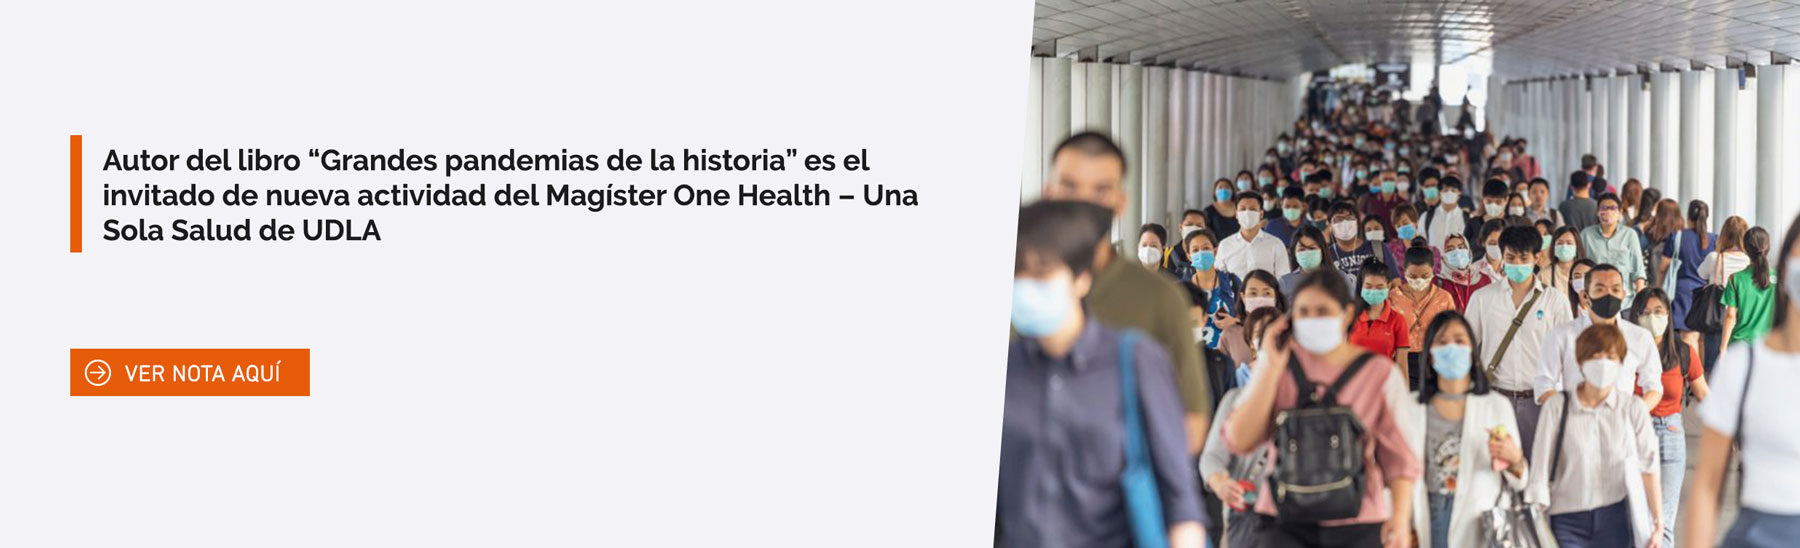 Autor del libro “Grandes pandemias de la historia” es el invitado de nueva actividad del Magíster One Health – Una Sola Salud de UDLA